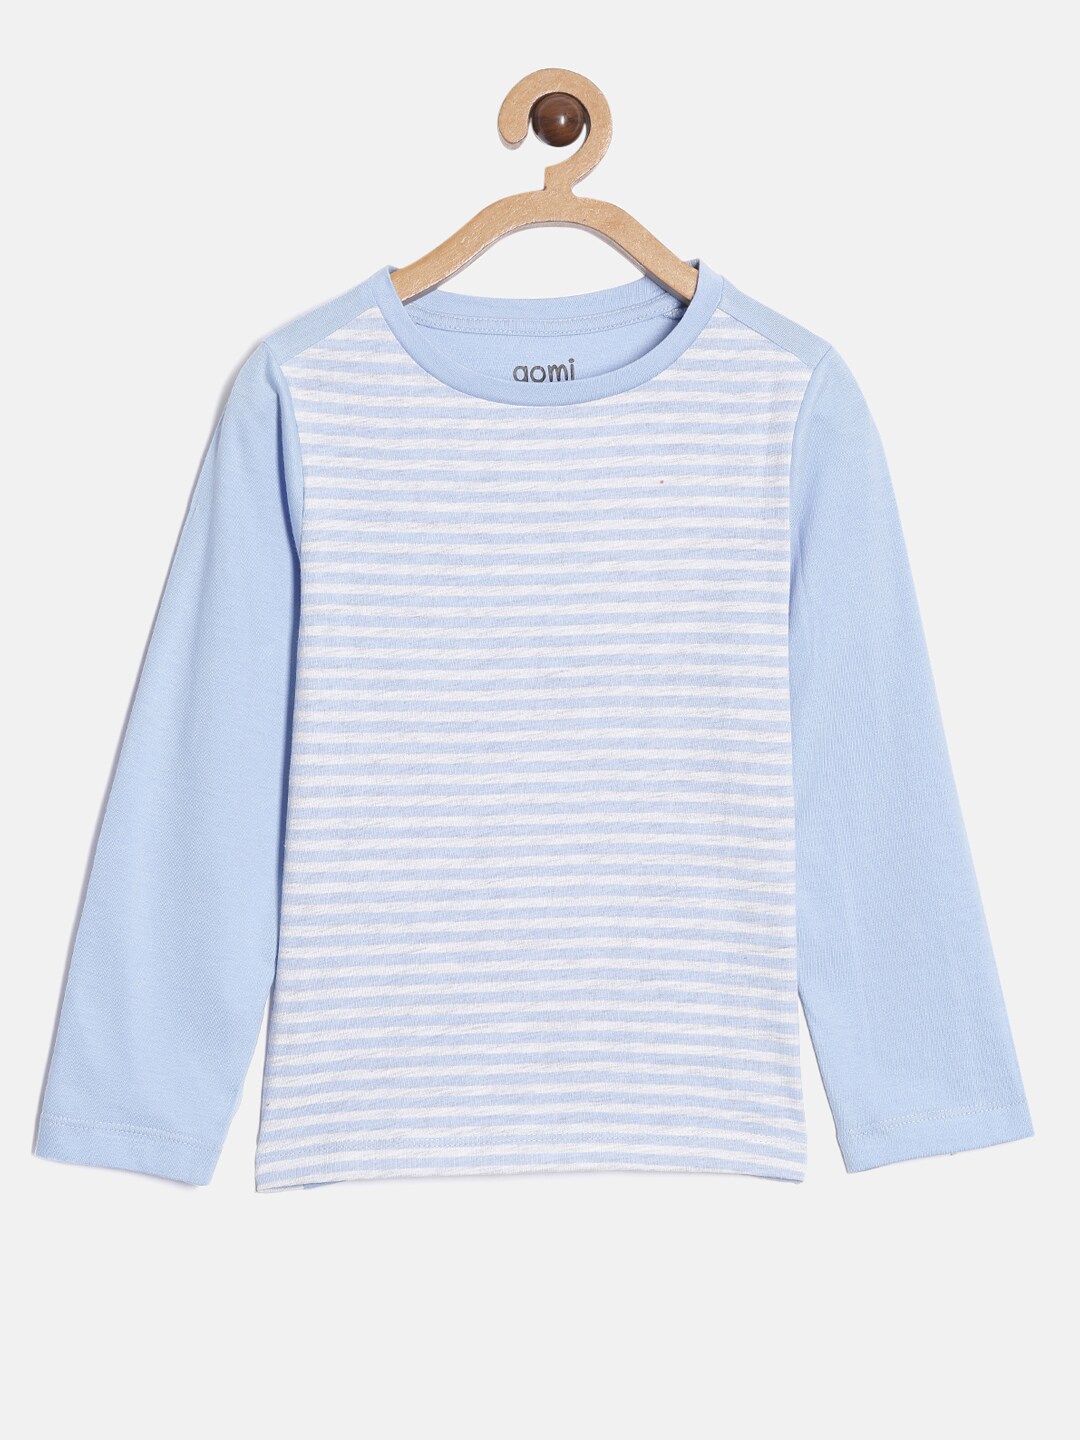 Buy Aomi Boys Blue & White Striped Dri FIT T Shirt - Tshirts for Boys ...